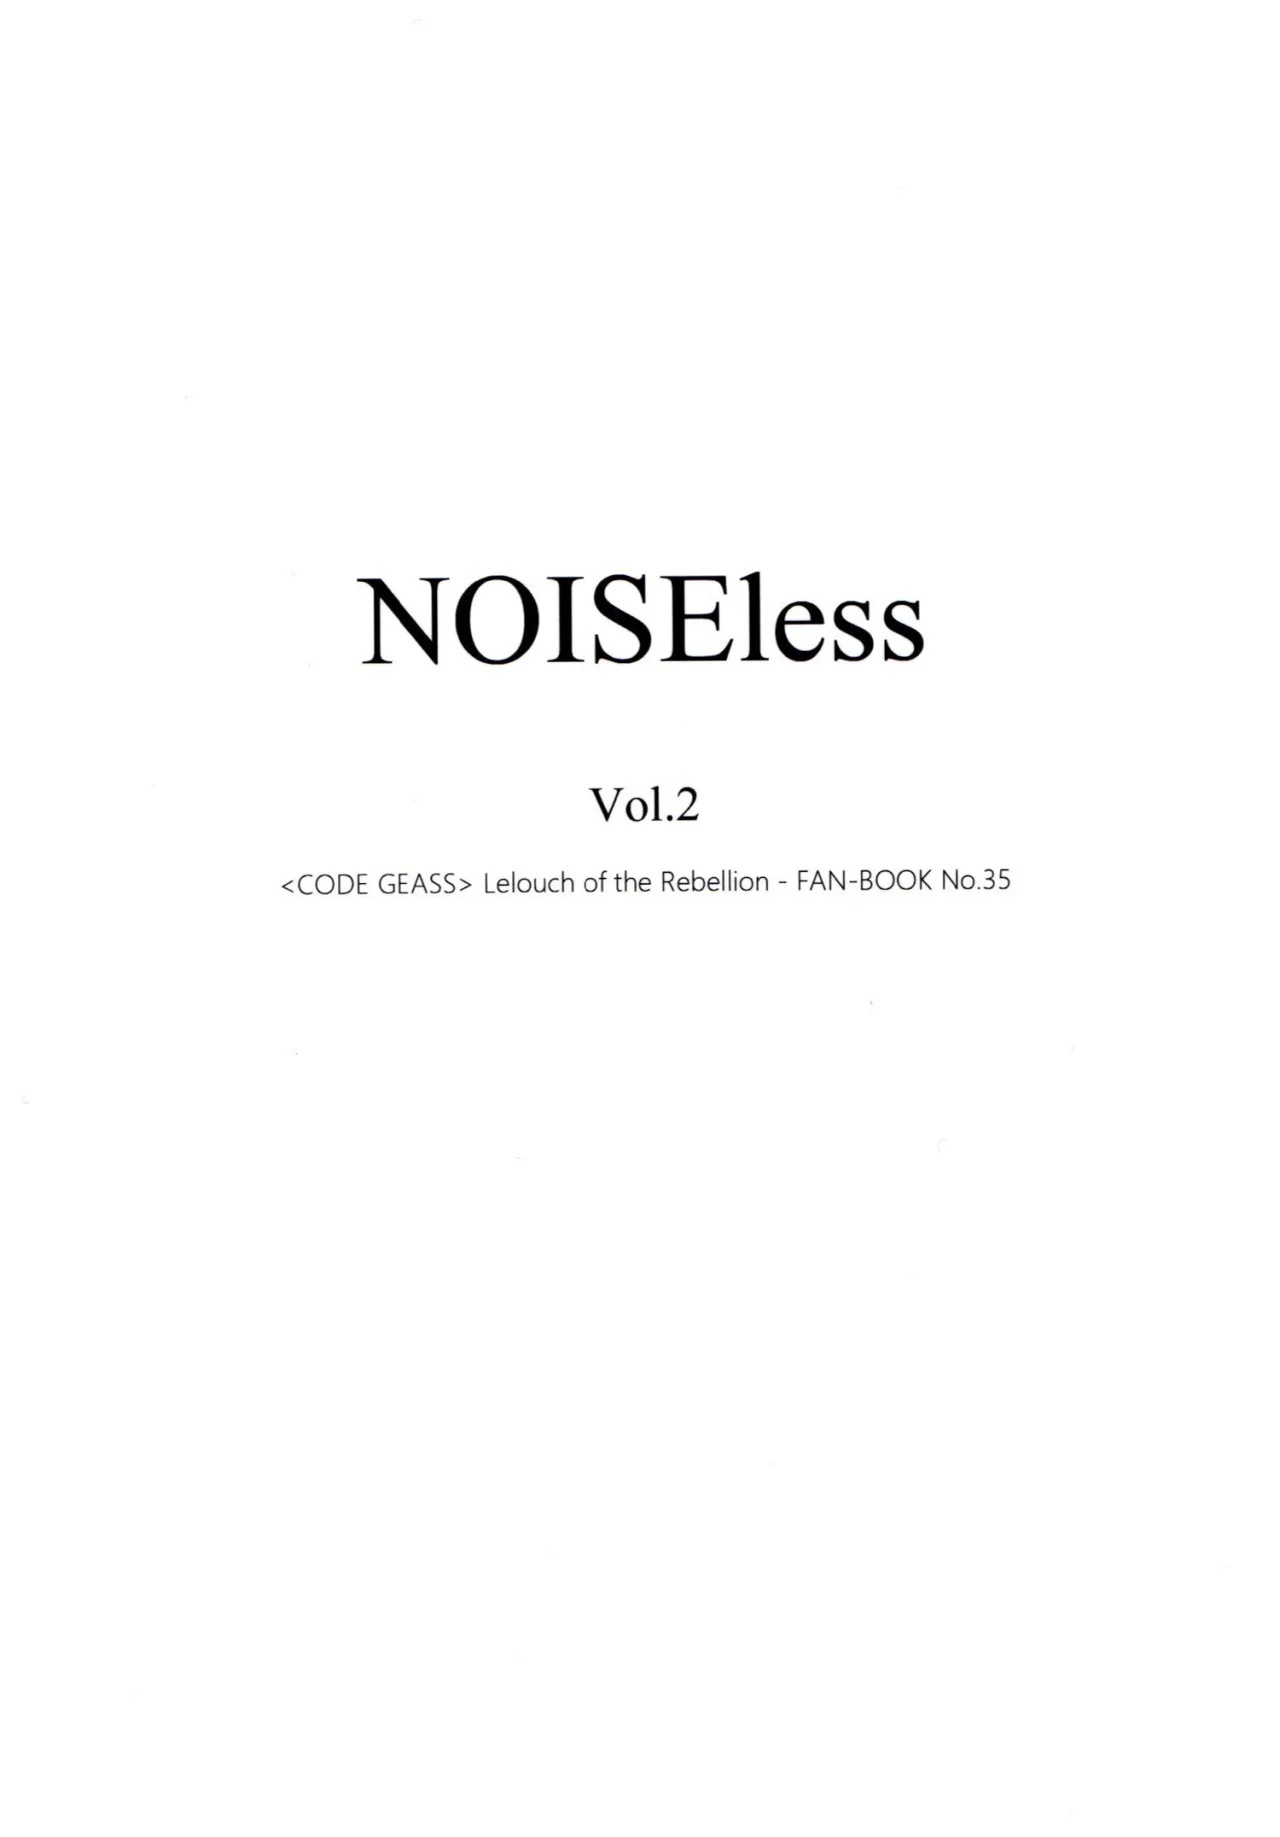 NOISEless Volumen 2 - 2